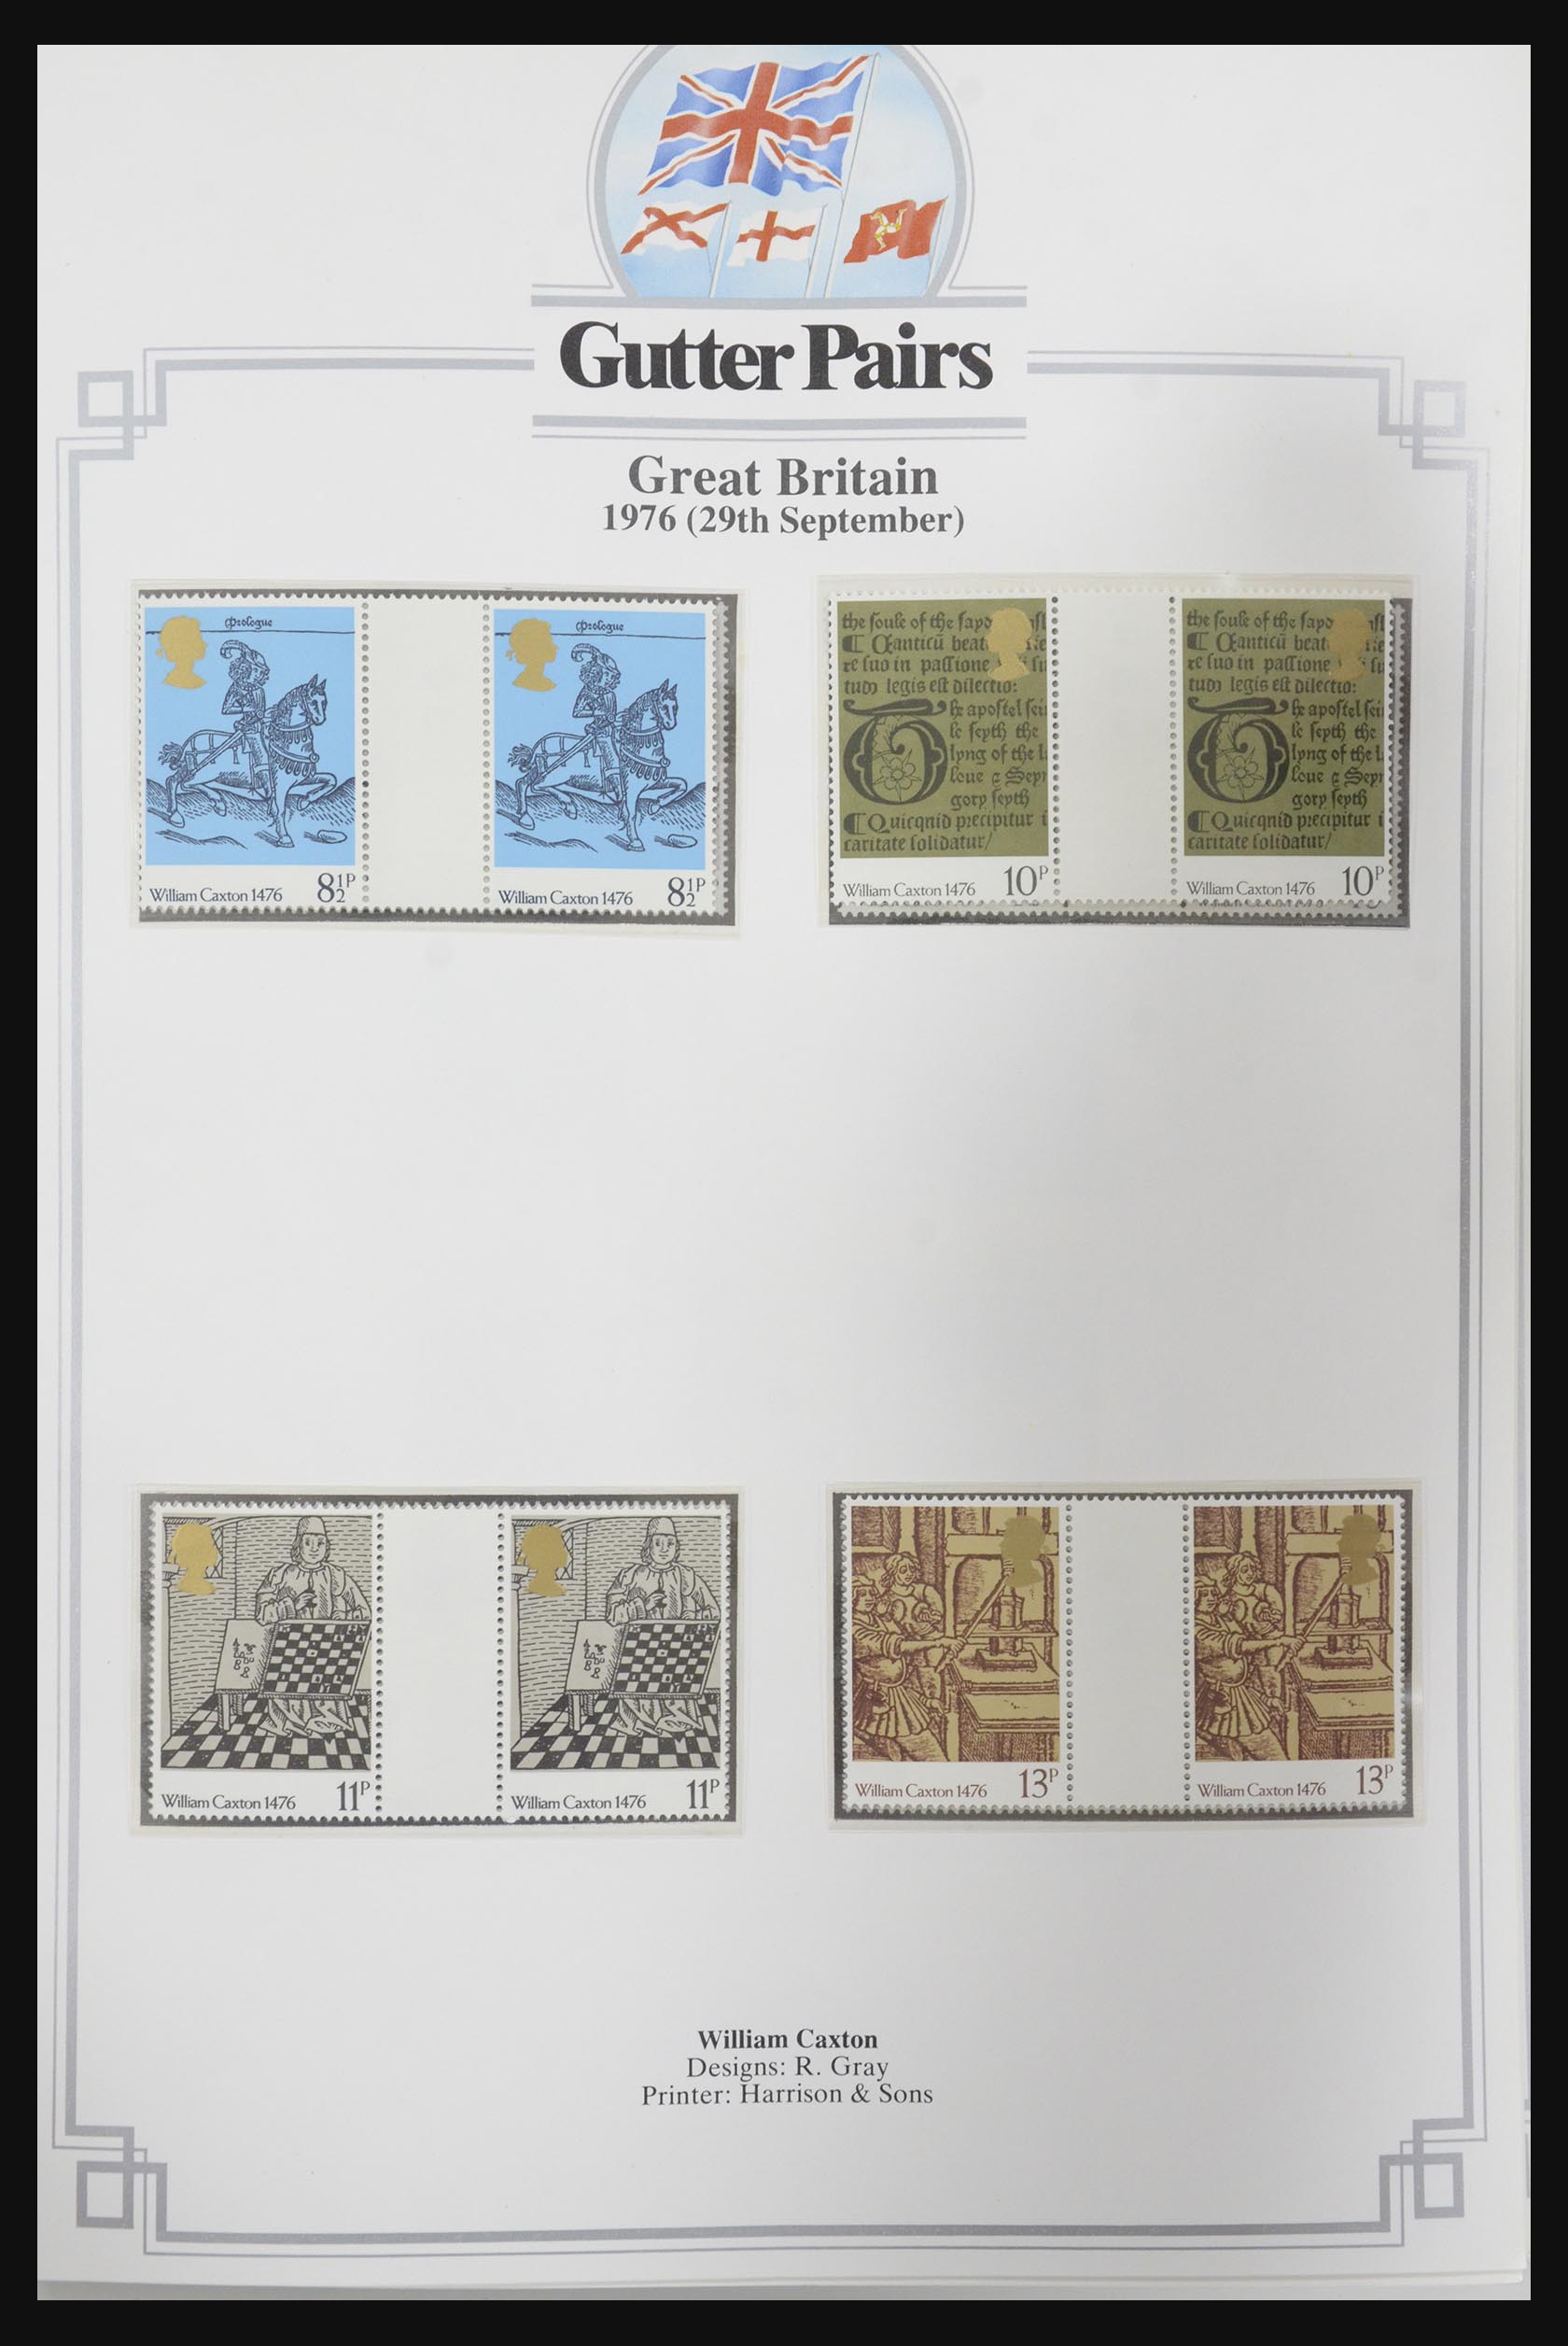 31717 001 - 31717 Engeland brugparen 1976-1991.